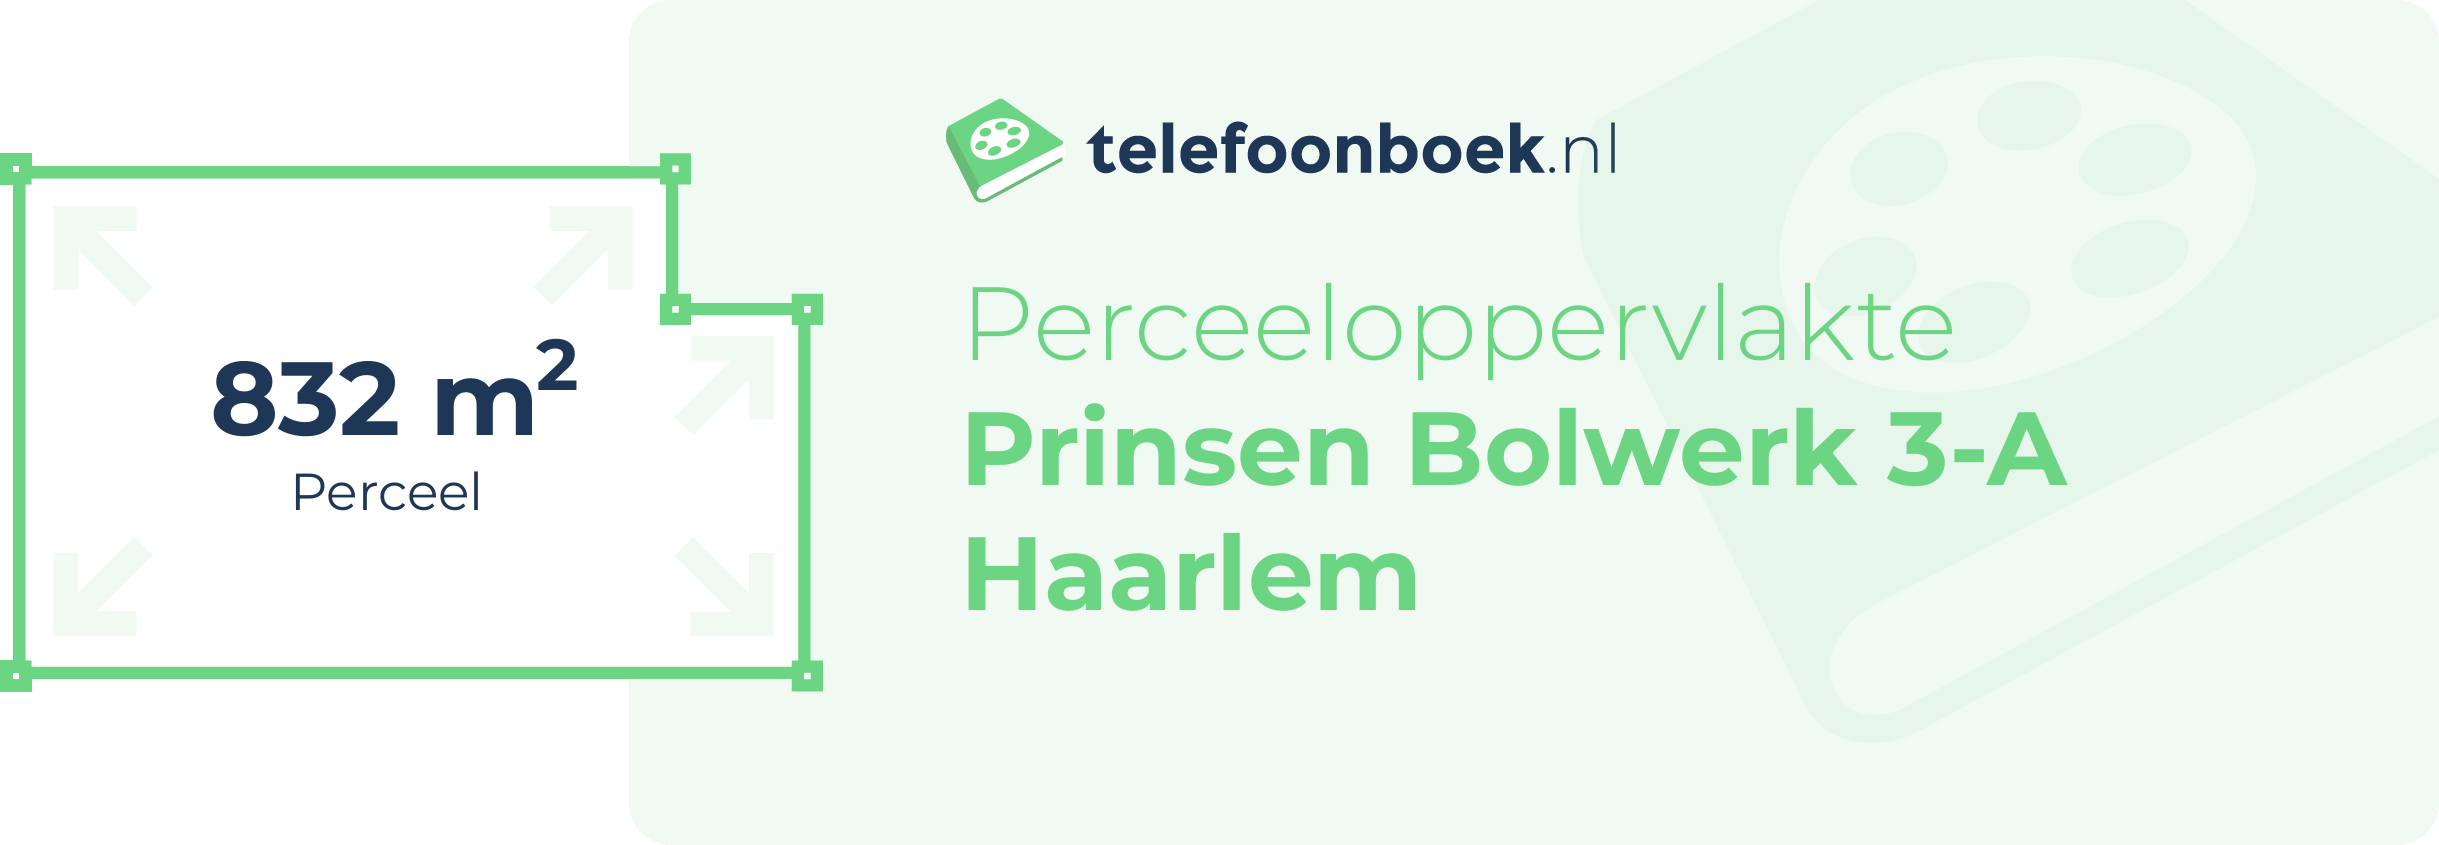 Perceeloppervlakte Prinsen Bolwerk 3-A Haarlem